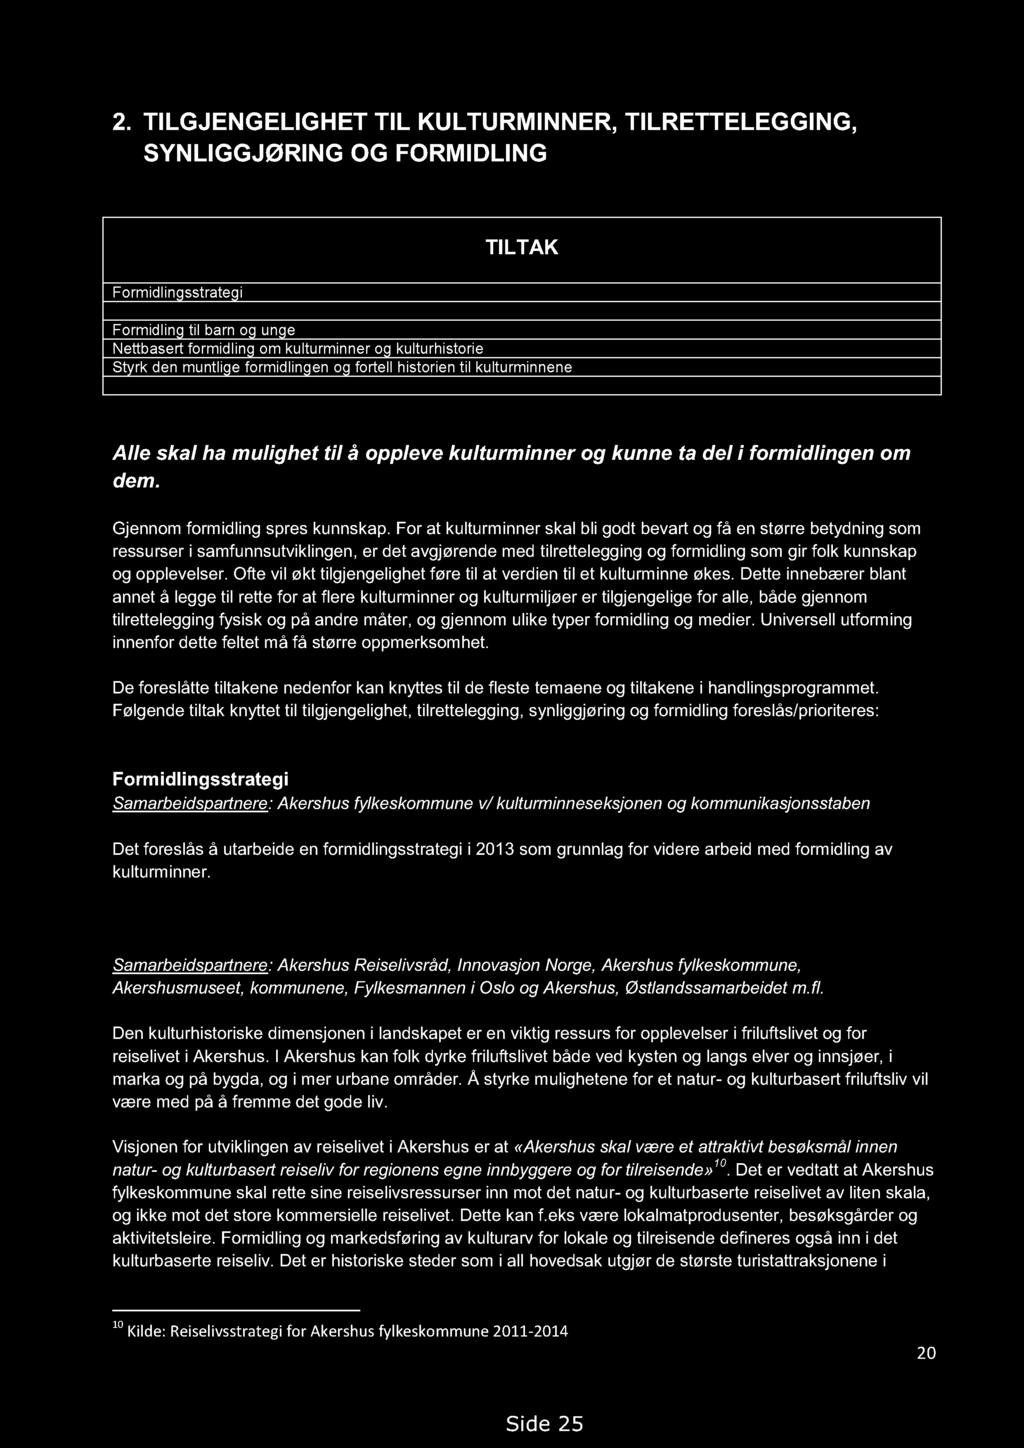 Handlingsprogram for kulturminner i Akershus 2013-2018. Høringsutkast 14.09.2012, med endringer 19.02.2013 2.